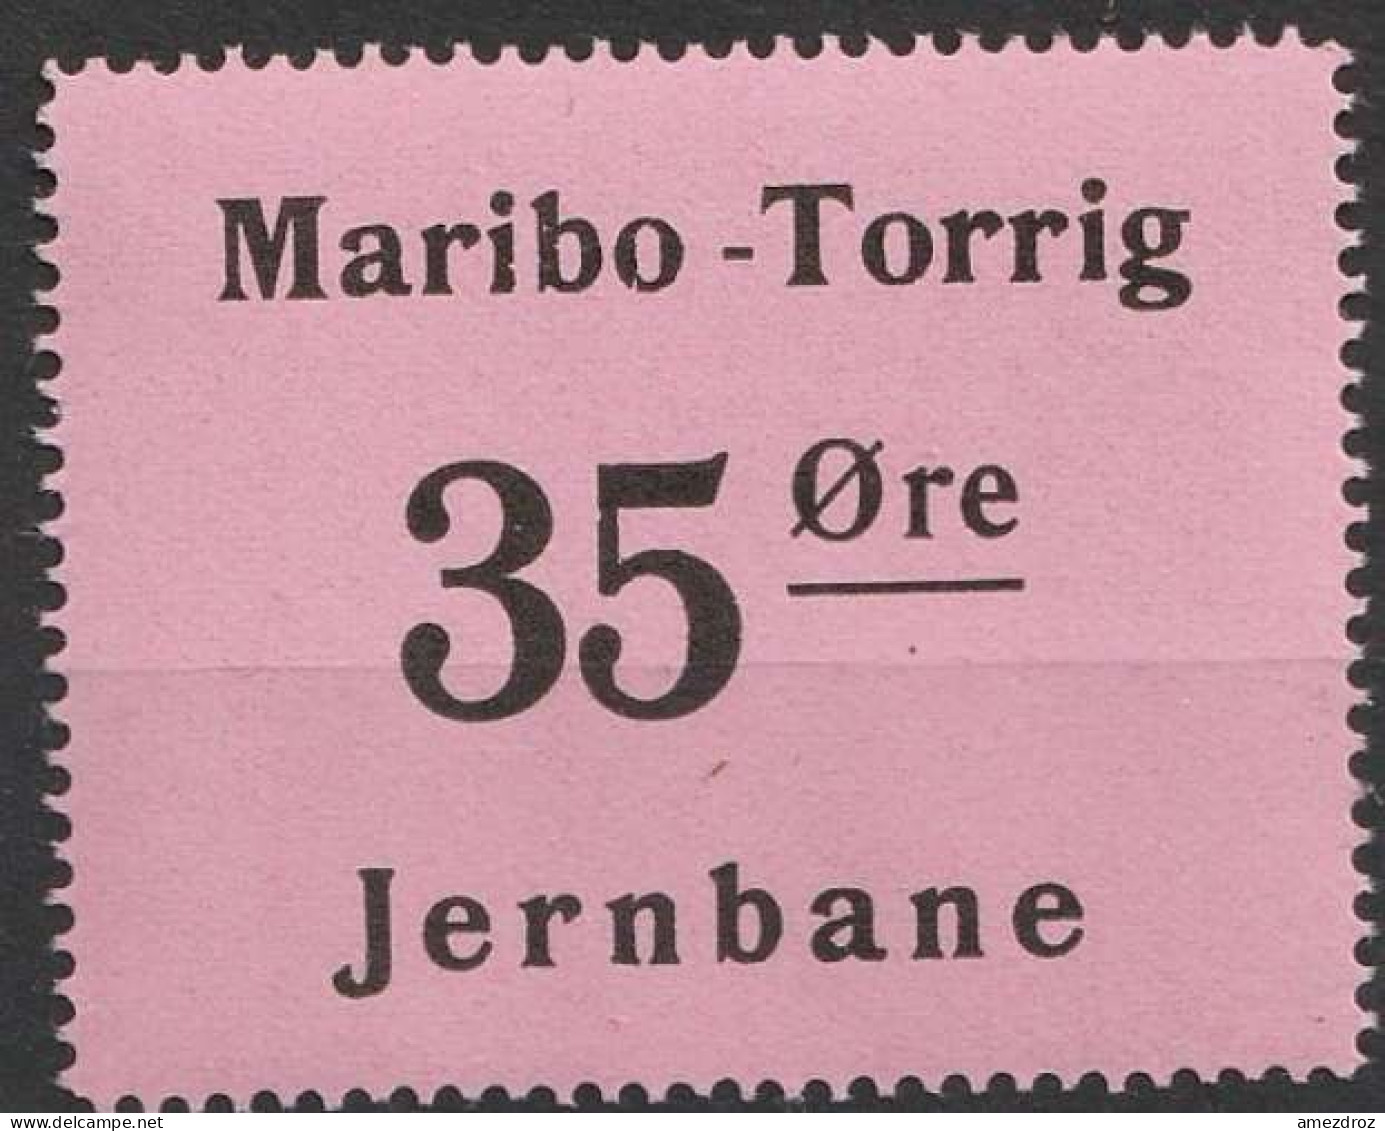 Chemin De Fer Danois ** - Dänemark Railway Eisenbahn Maribo - Torrig Jernbane   (A13) - Postpaketten